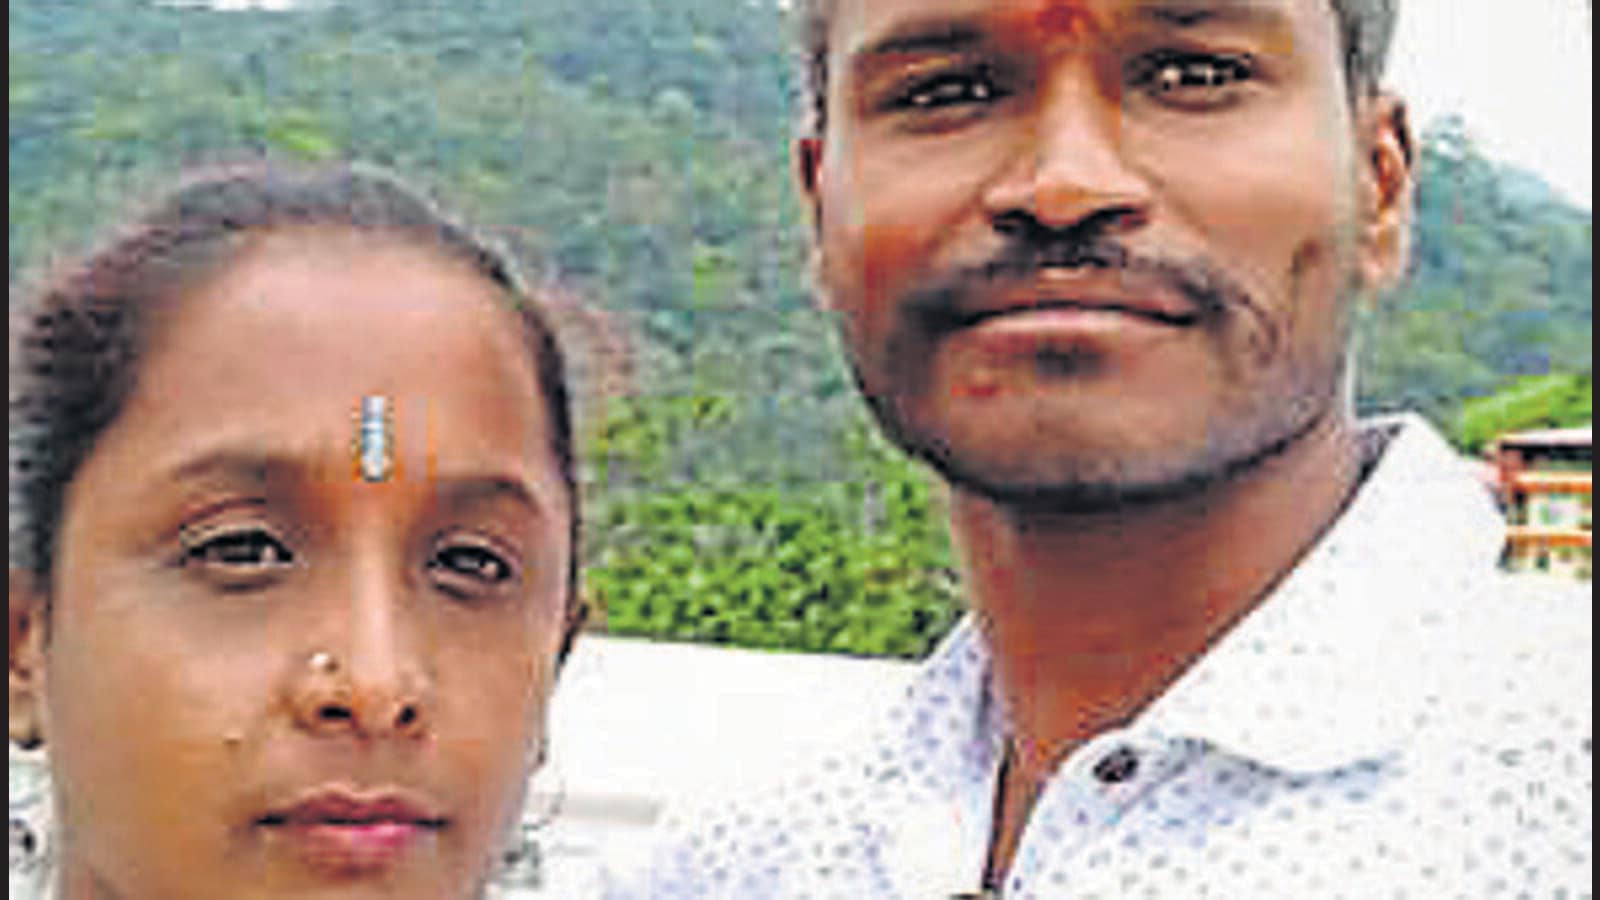 Serial killer held in Karnataka for hacking women to death over revenge Latest News India